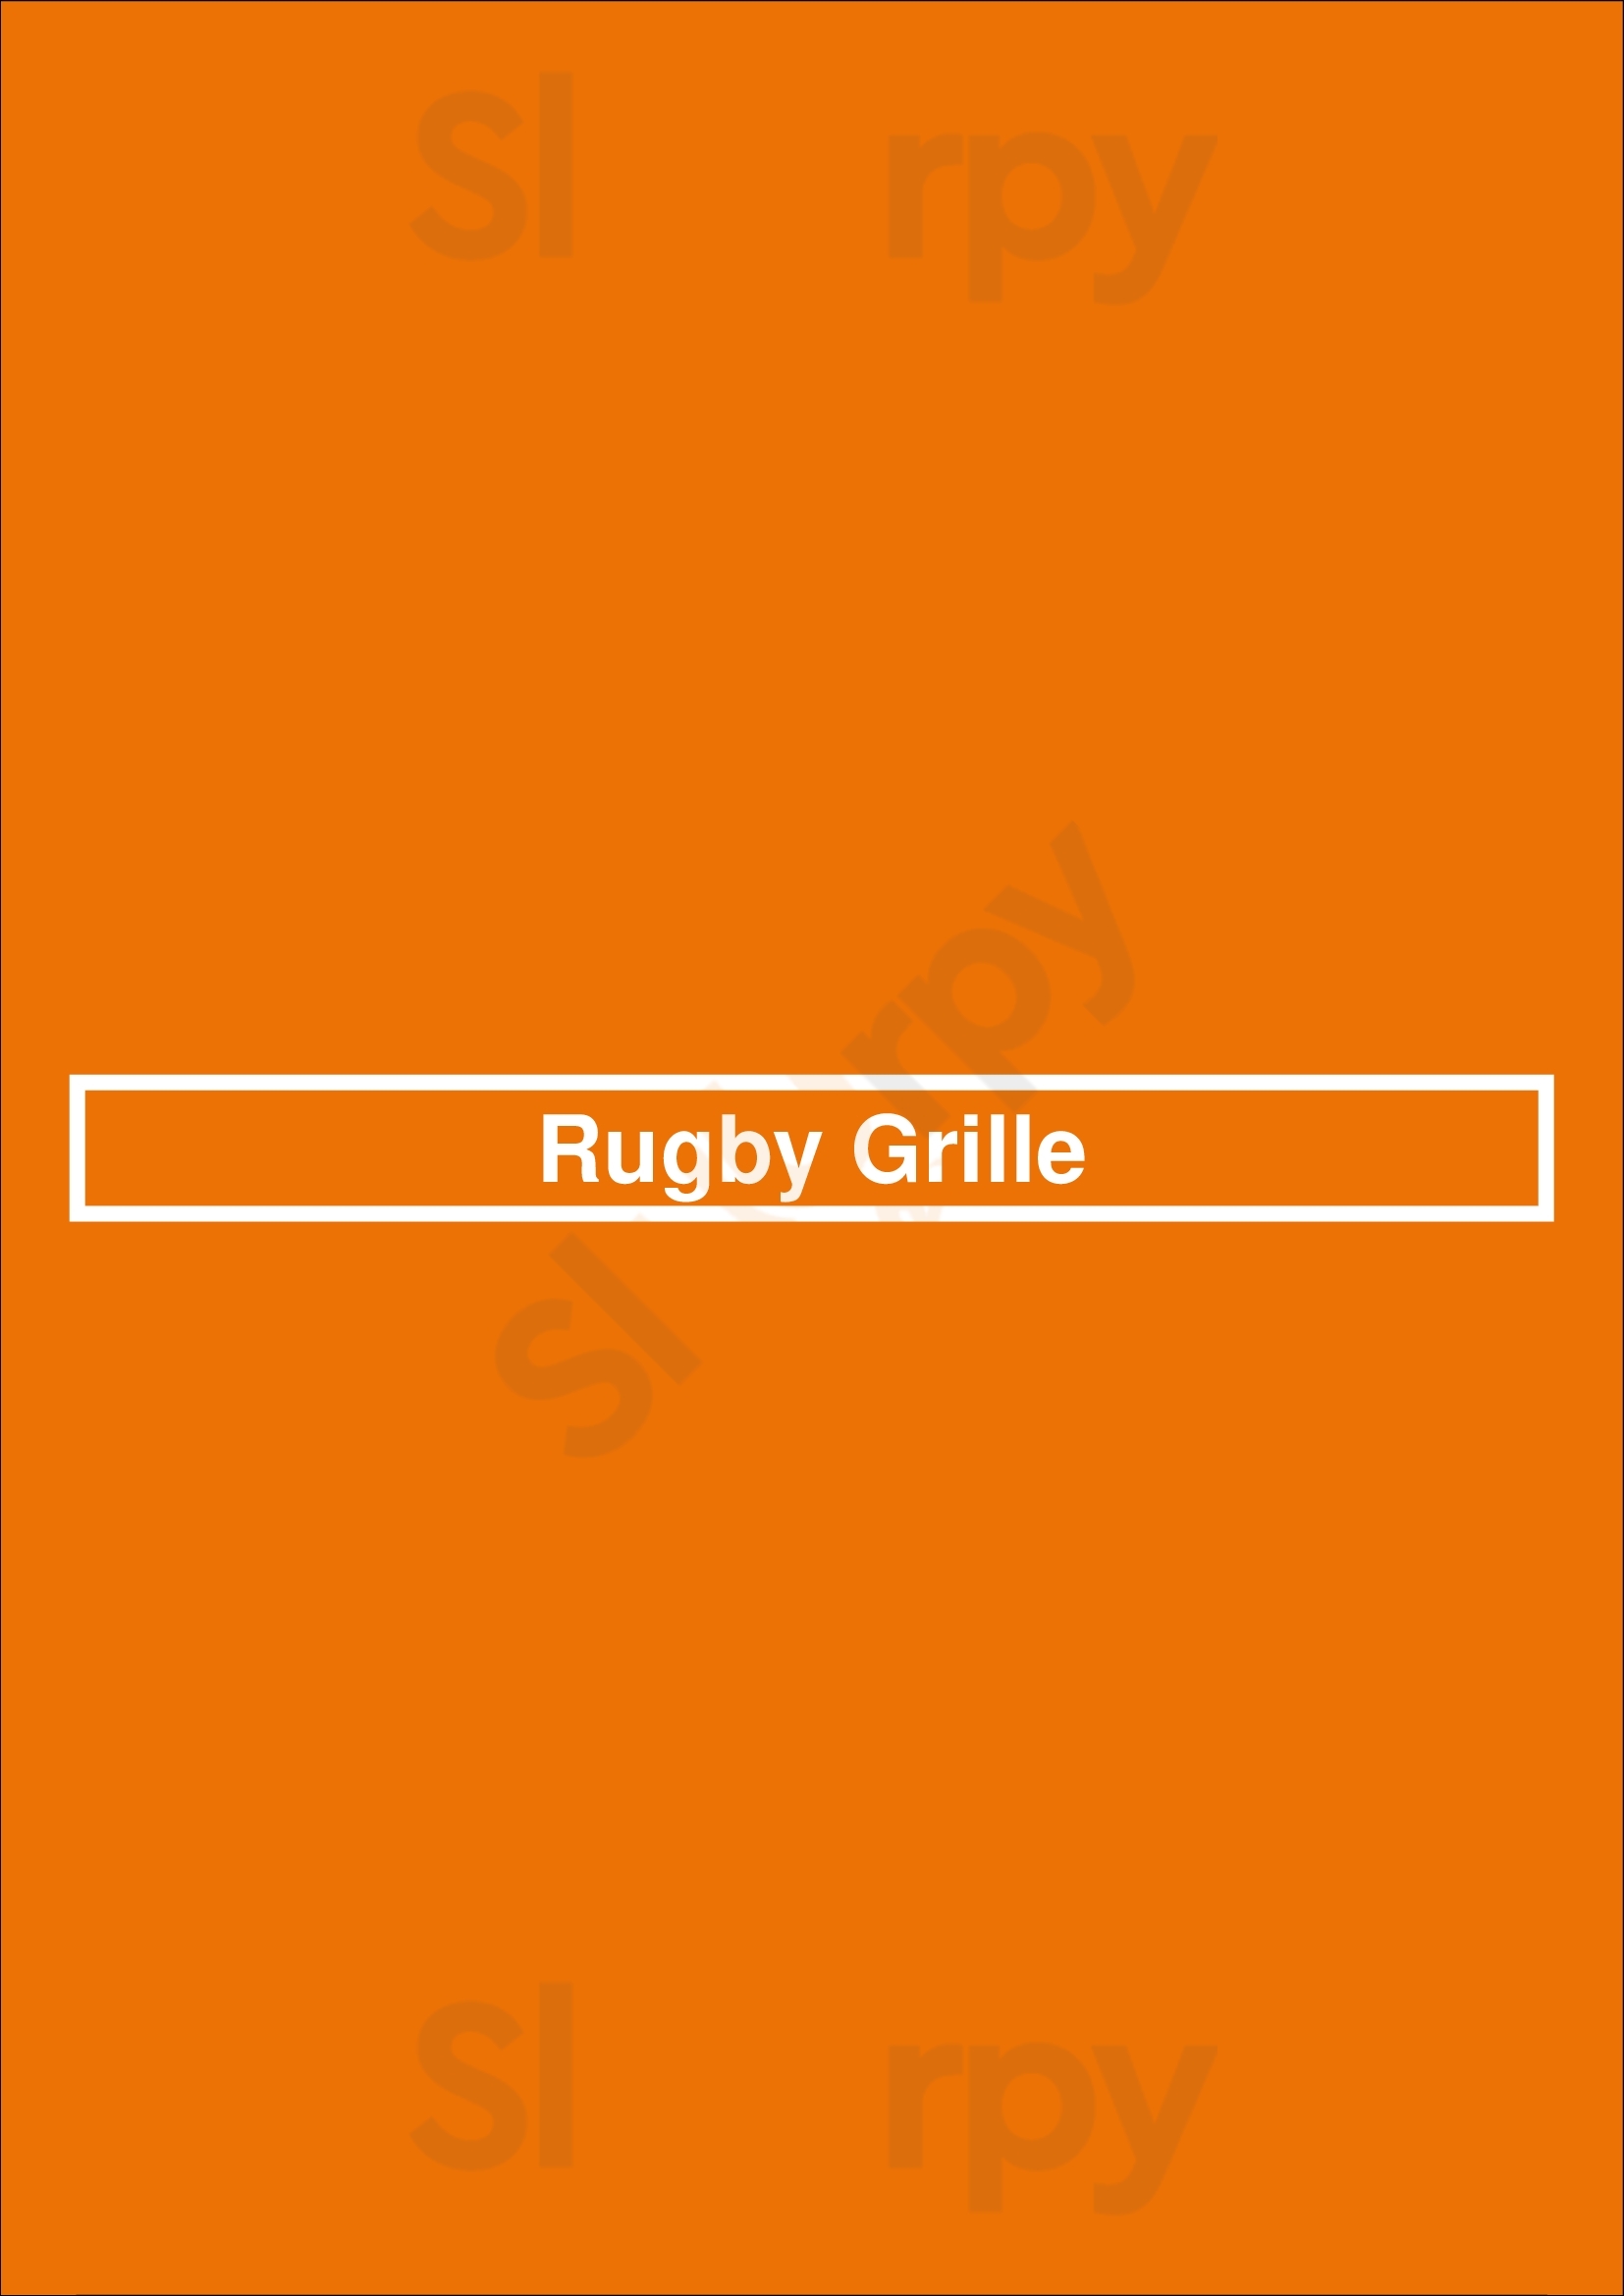 Rugby Grille Birmingham Menu - 1